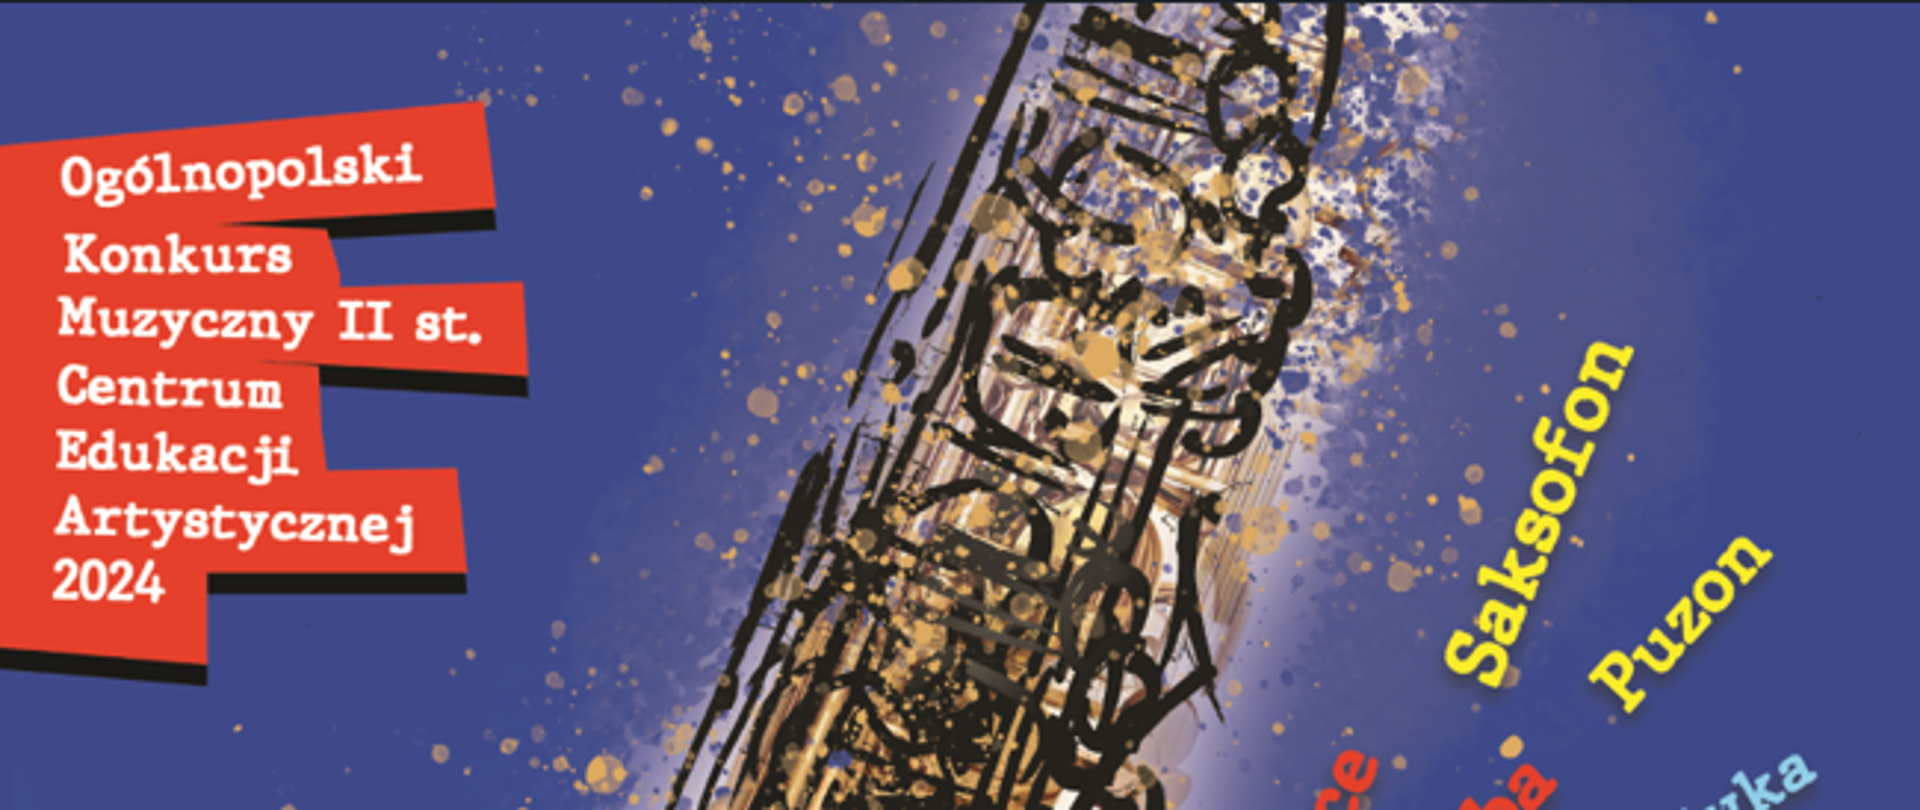 Zajmujący centralną część obrazu złoty saksofon błyszczy na tle intensywnie niebieskiego, plamiastego tła, które wydaje się być rozbryzgane farbą. Saksofon jest przedstawiony w dużej skali, co pozwala dostrzec szczegóły instrumentu, takie jak klapy i zawory.
W górnej lewej części plakatu umieszczono tekst na czerwonych paskach z białymi literami, który ogłasza "Ogólnopolski Konkurs Muzyczny II st. Centrum Edukacji Artystycznej 2024". Poniżej na niebieskim tle, przekrzywione litery w różnych odcieniach niebieskiego, złota i czerwieni wypisują kategorie konkursowe, takie jak "Skrzypce", "Akordeon", "Fagot", "Wokalistyka estradowa" i "Zespoły kameralne".
W dolnej części plakatu, na niebieskim tle z białą czcionką, znajduje się informacja o koncercie laureatów, który odbędzie się 31 maja 2024 r. w Sali Koncertowej ZPSM nr 1 w Warszawie. Logo organizatora, Centrum Edukacji Artystycznej, oraz Ministerstwo Kultury i Dziedzictwa Narodowego, są umieszczone na dole plakatu.